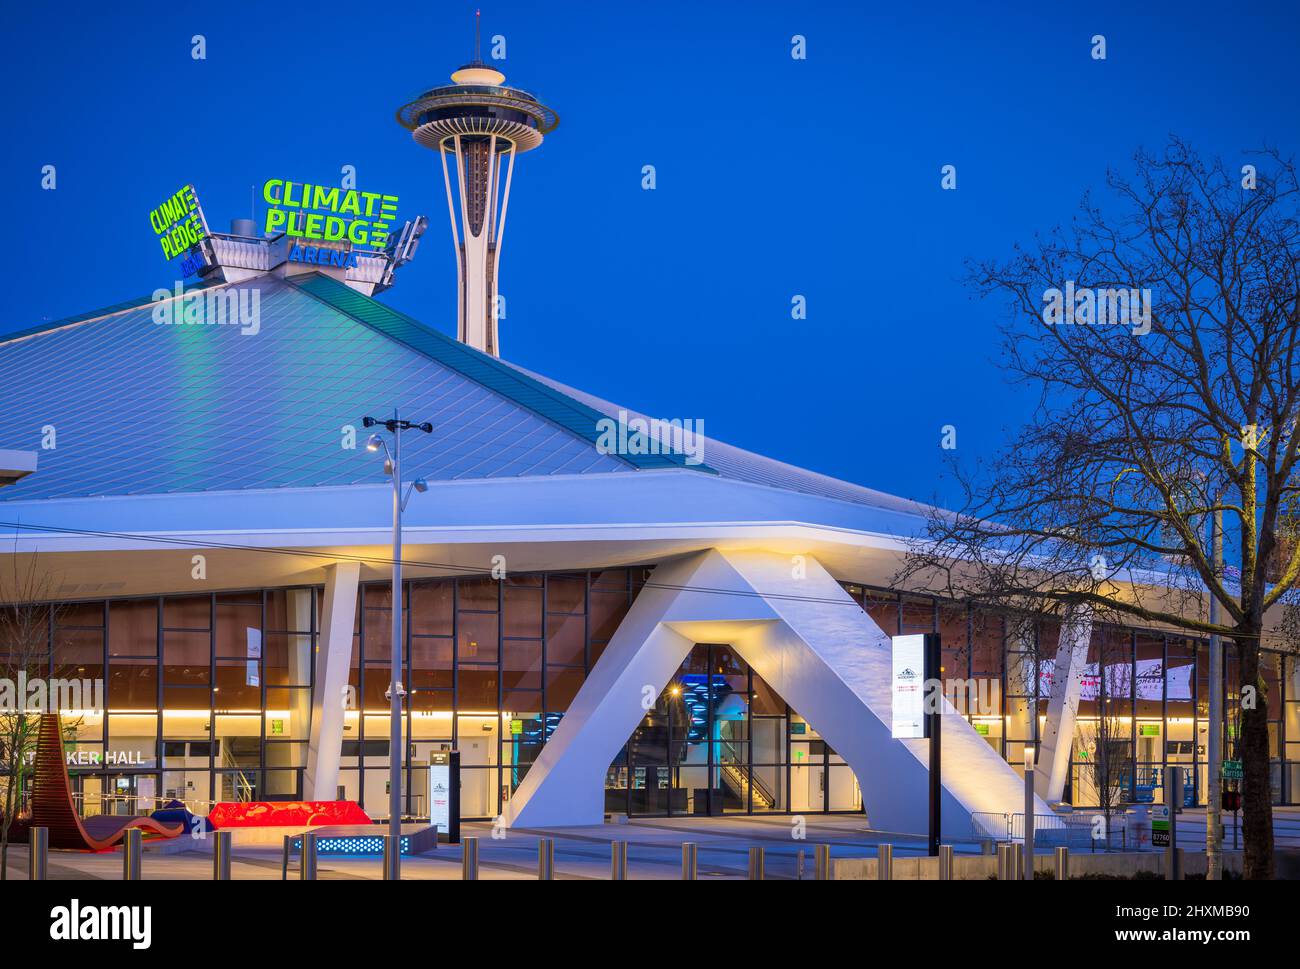 Clima Pledge Arena es una arena polivalente en Seattle, Washington, Estados Unidos. Foto de stock